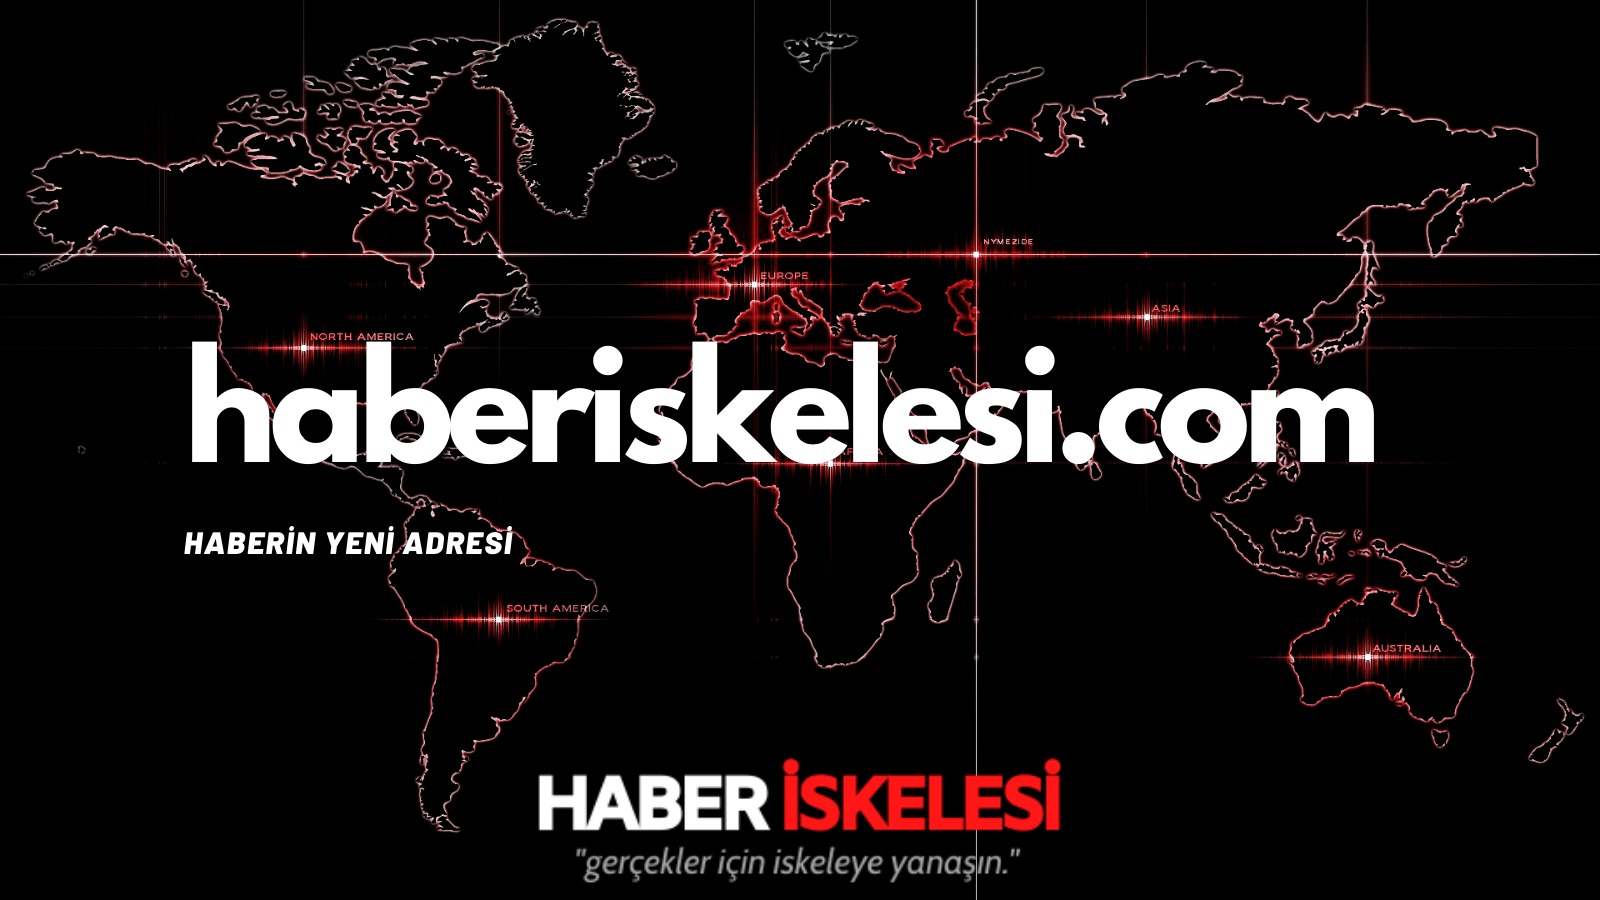 İzmir depremi soruşturmasında flaş gelişme: 22 kişiye gözaltı kararı